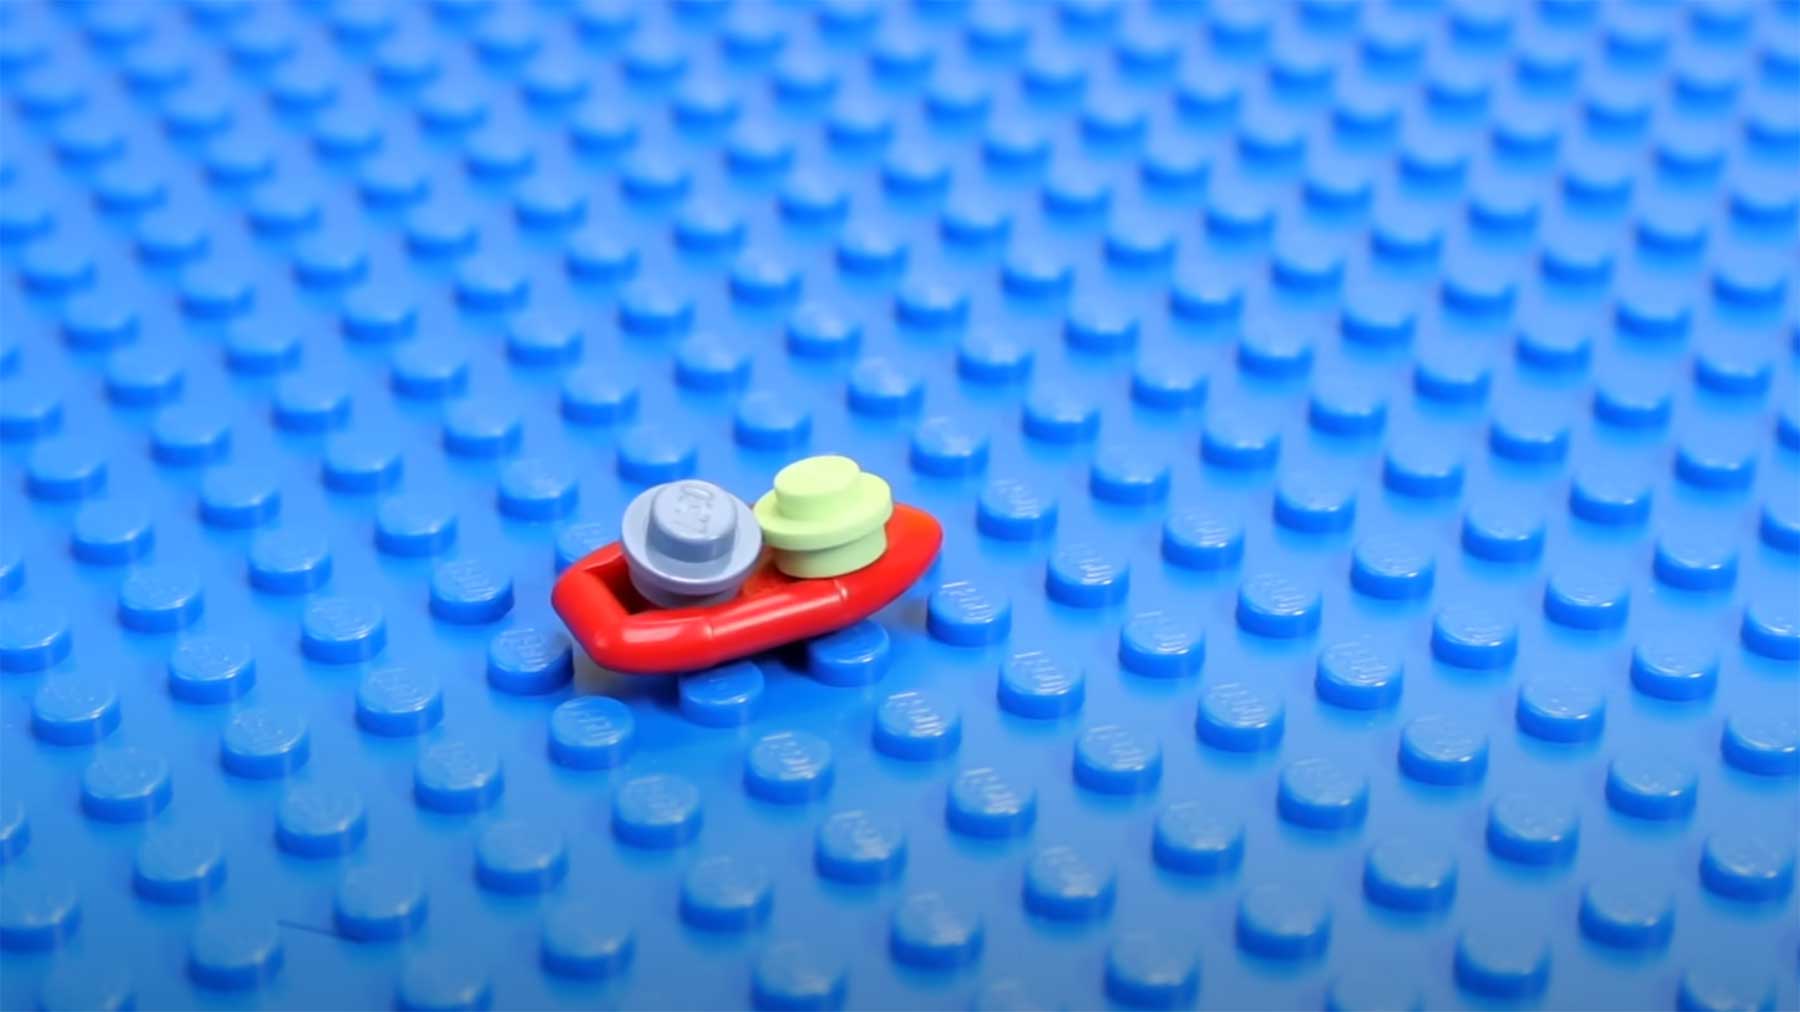 LEGO so klein wie möglich bauen